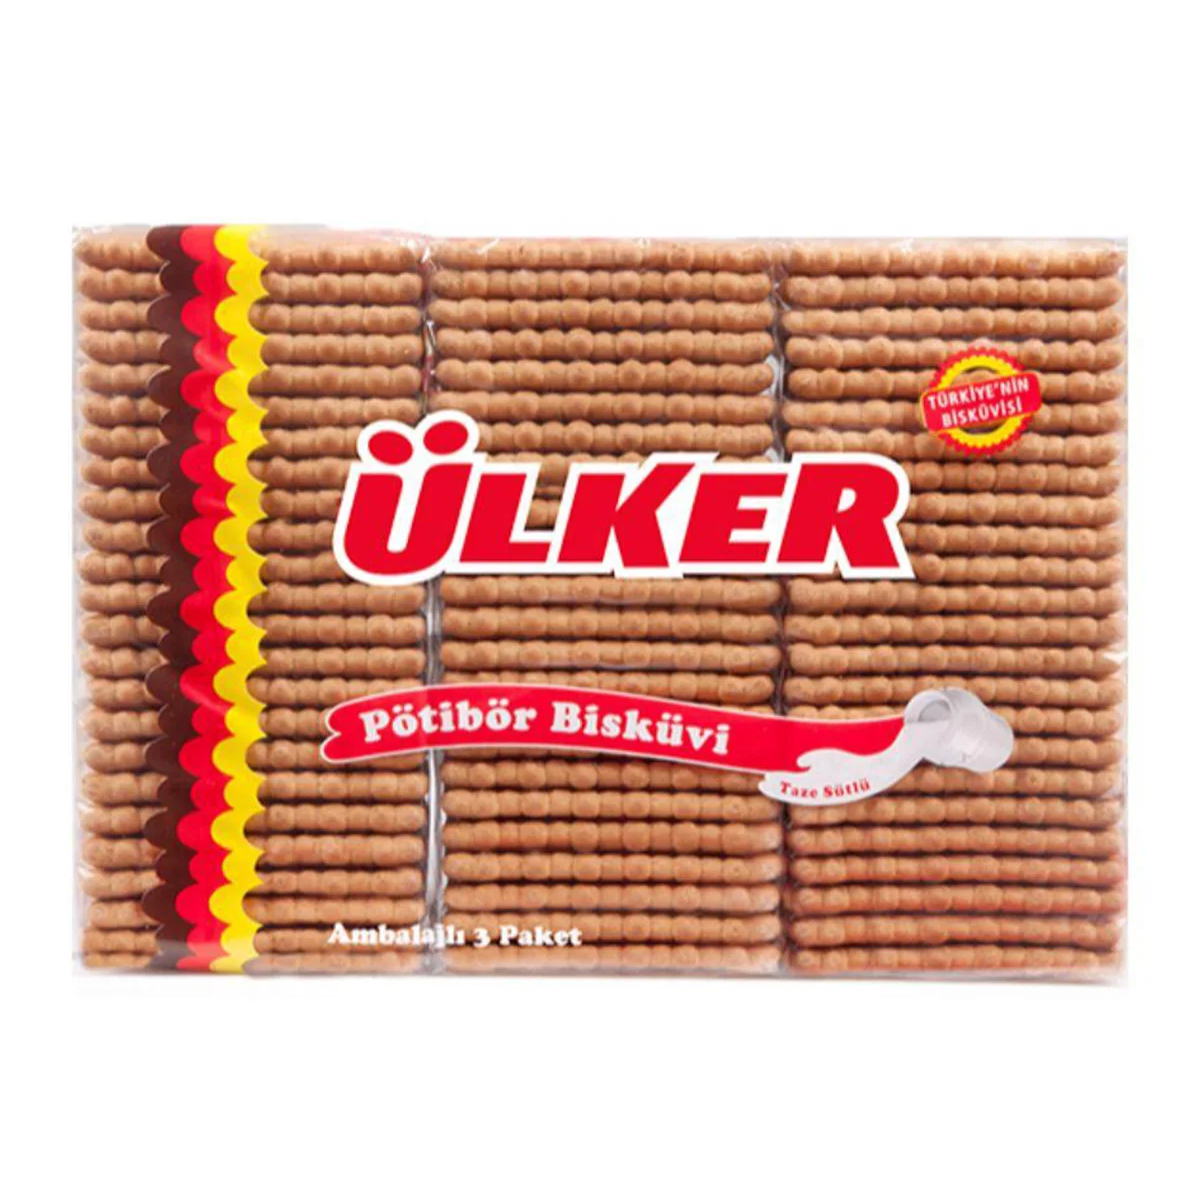 Печенье Ulker Petit Beurre, 450 г печенье ulker с карамелью и корицей 88 г